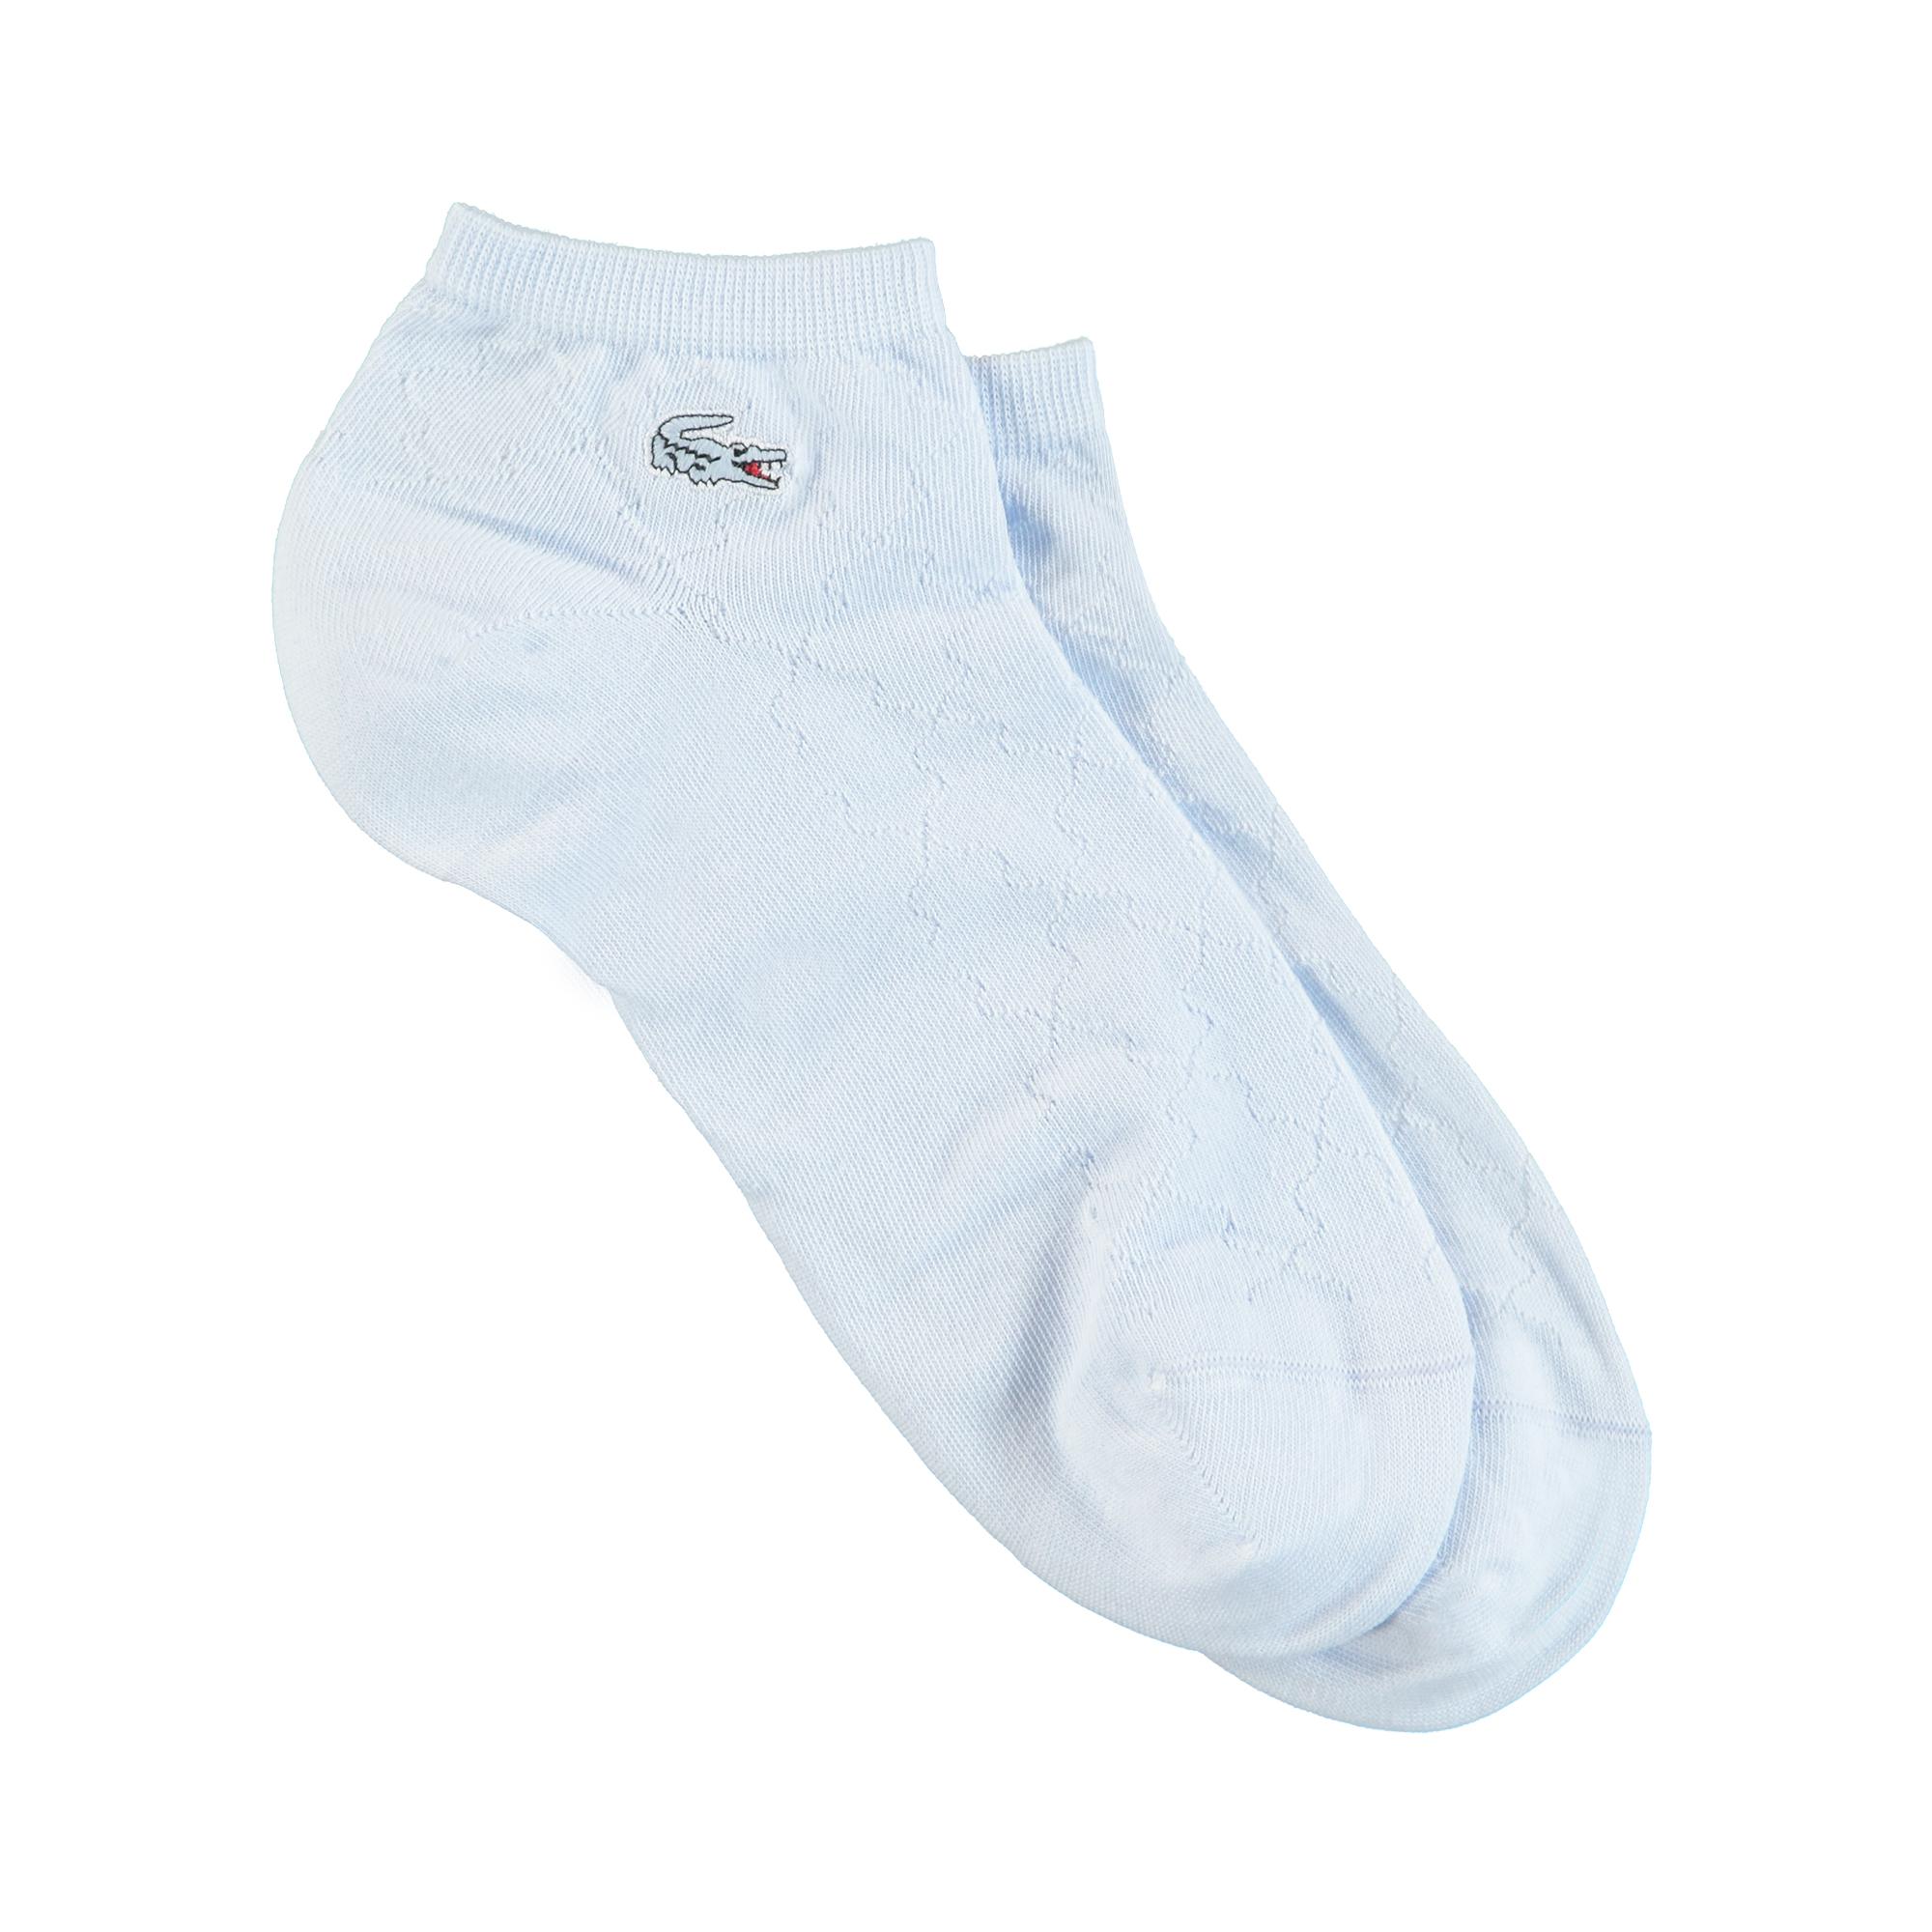 Lacoste Kadın Desenli Açık Mavi Çorap. 2